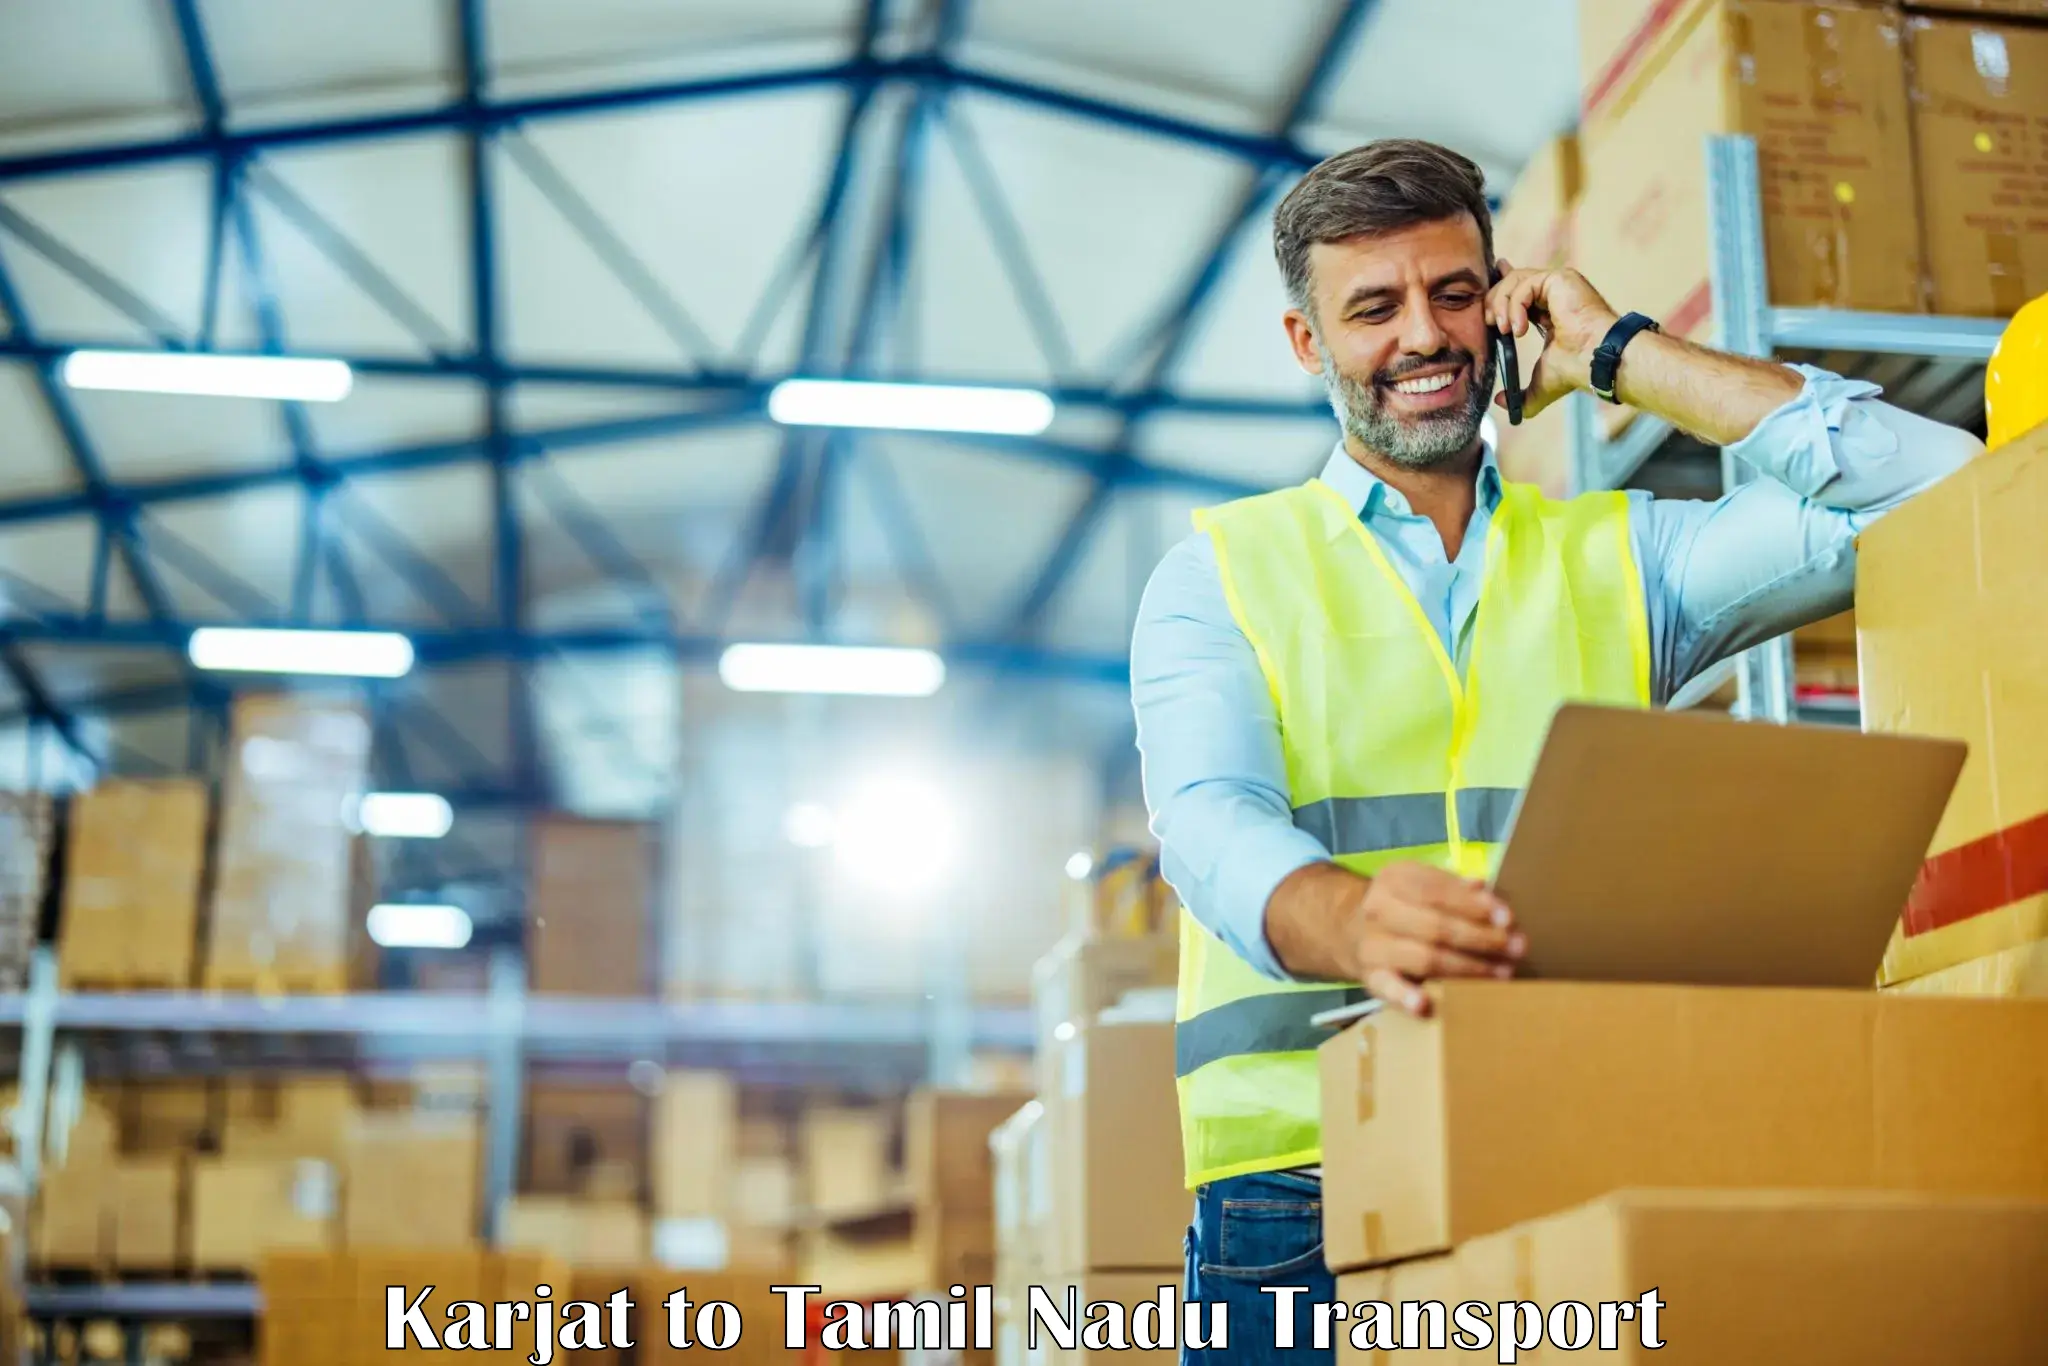 Furniture transport service Karjat to Melakaveri